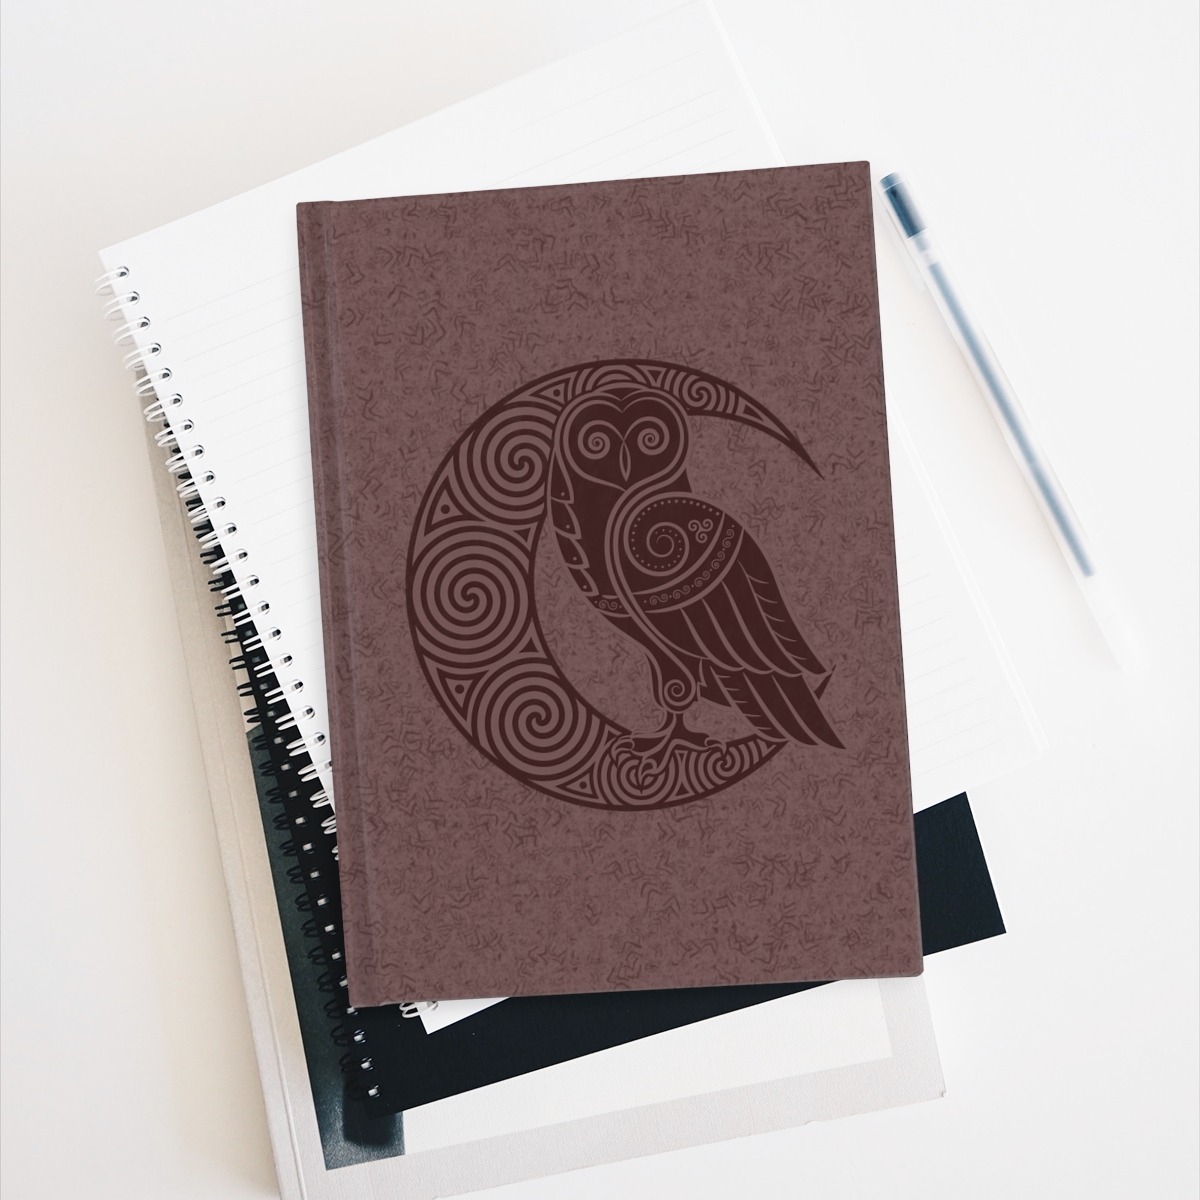 Maroon Owl Crescent Moon Journal